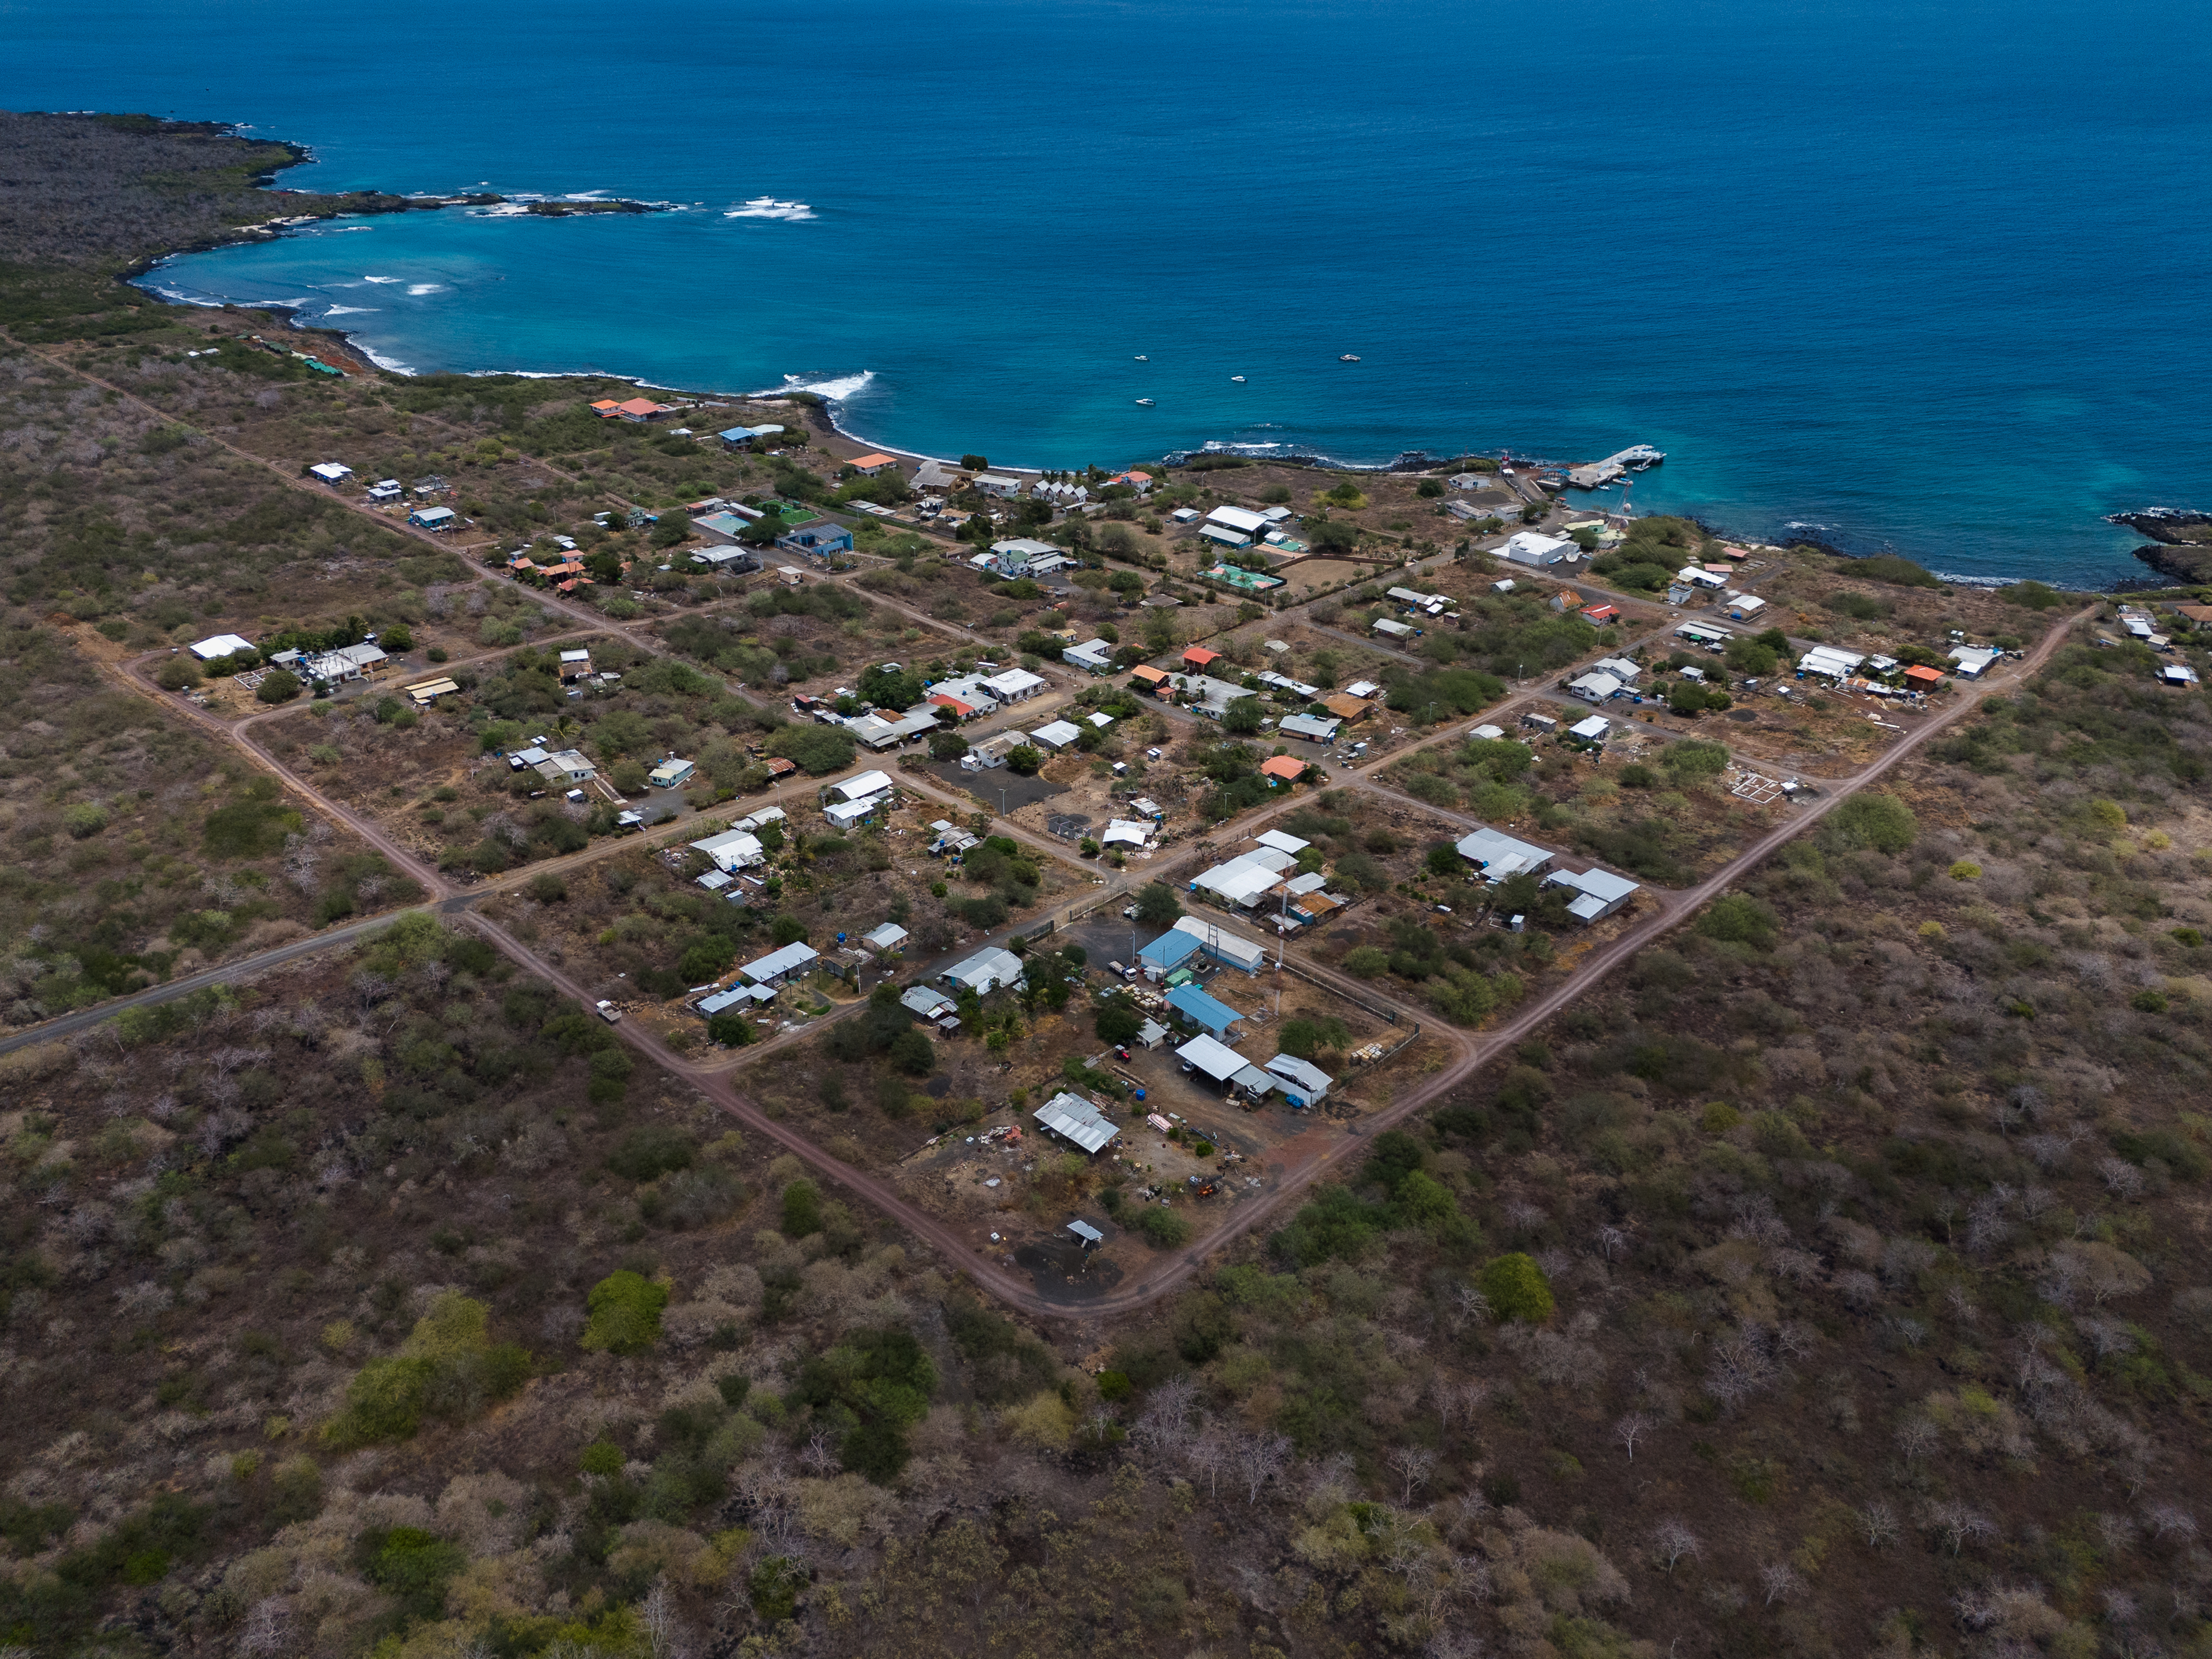 Bahnbrechende Initiative zur ökologischen Wiederherstellung beginnt auf der Insel Floreana, Galapagos